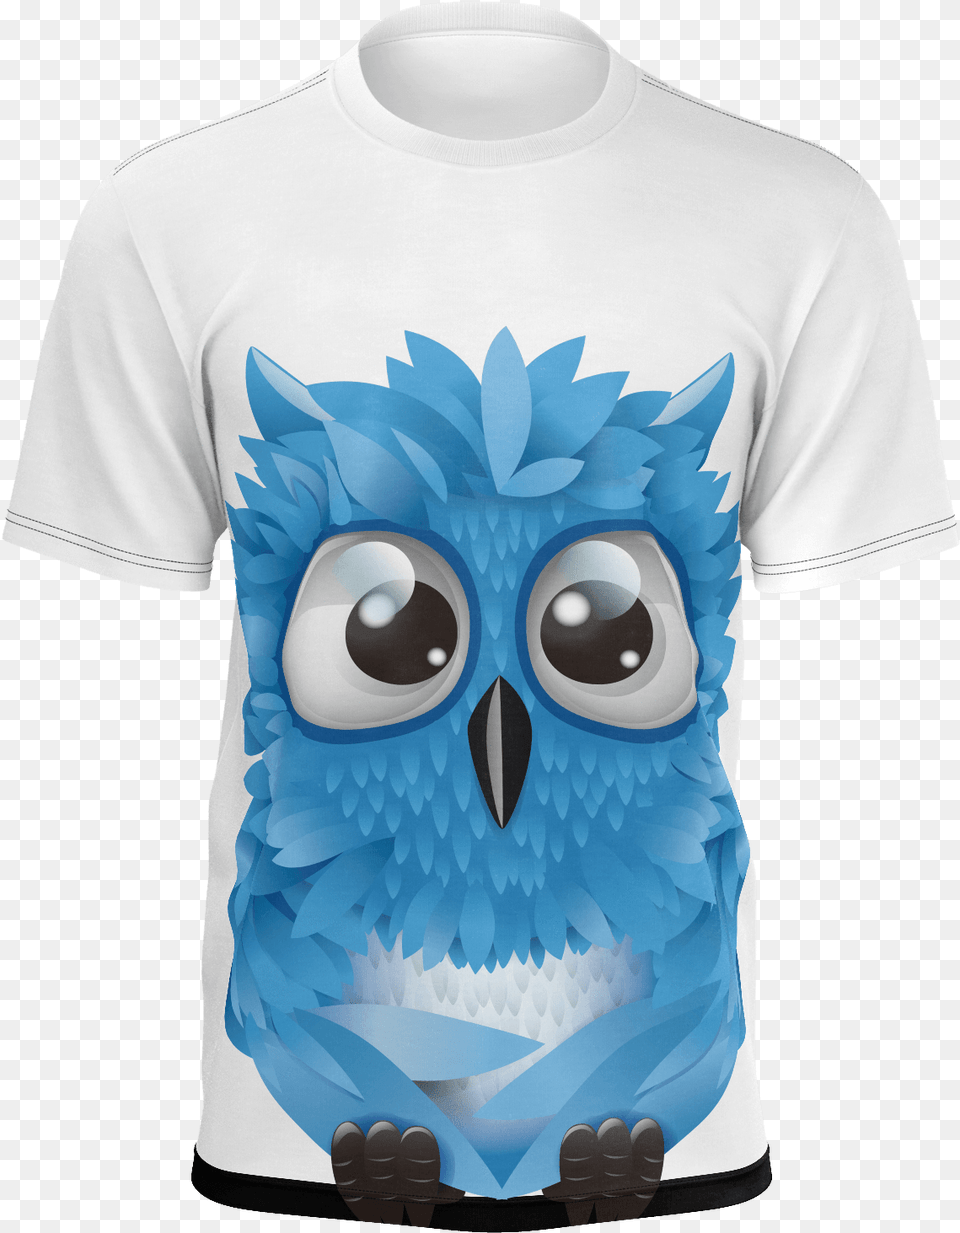 Cute Owl T Shirt Eastern Screech Owl, Clothing, T-shirt Png Image